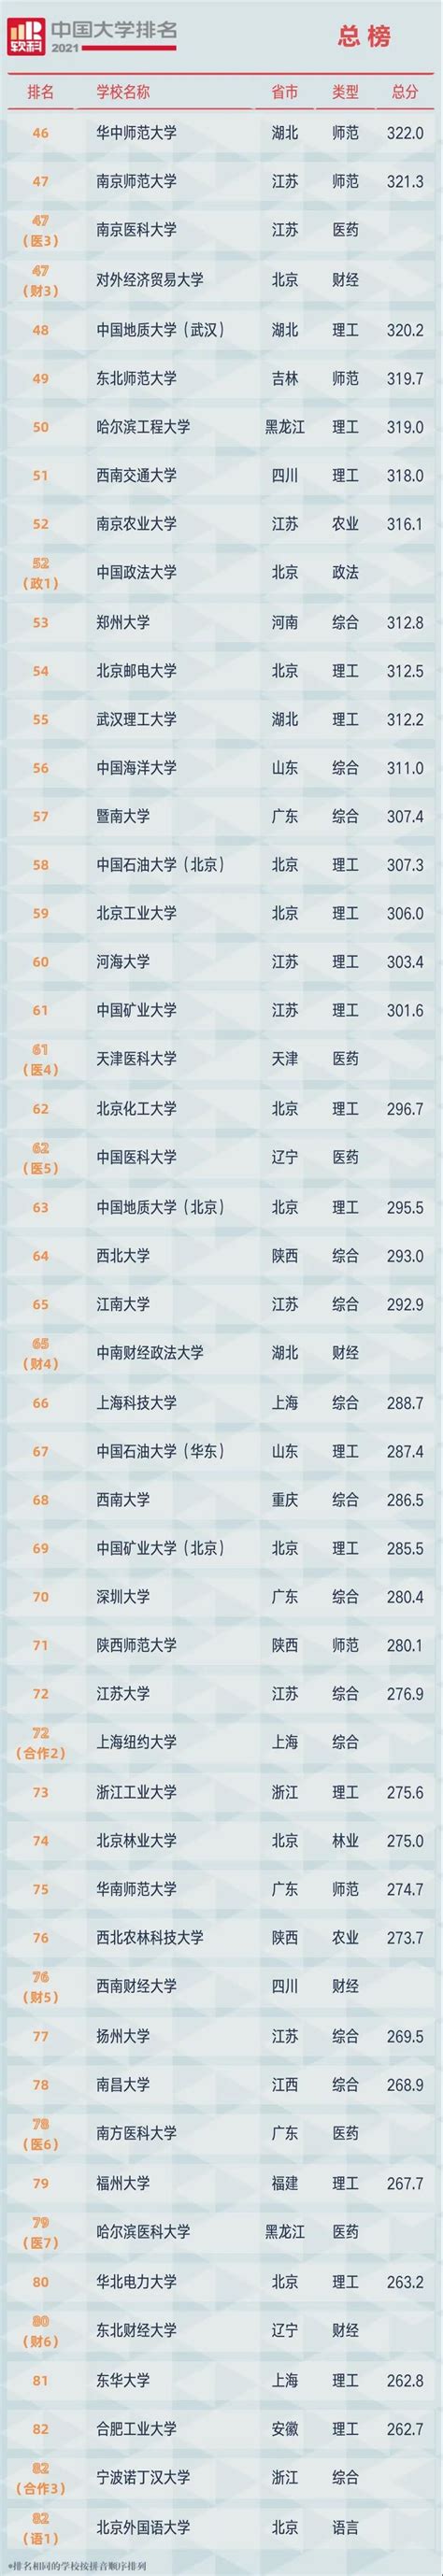 2019软科世界大学学科排名(医学领域TOP50)-寰兴留学